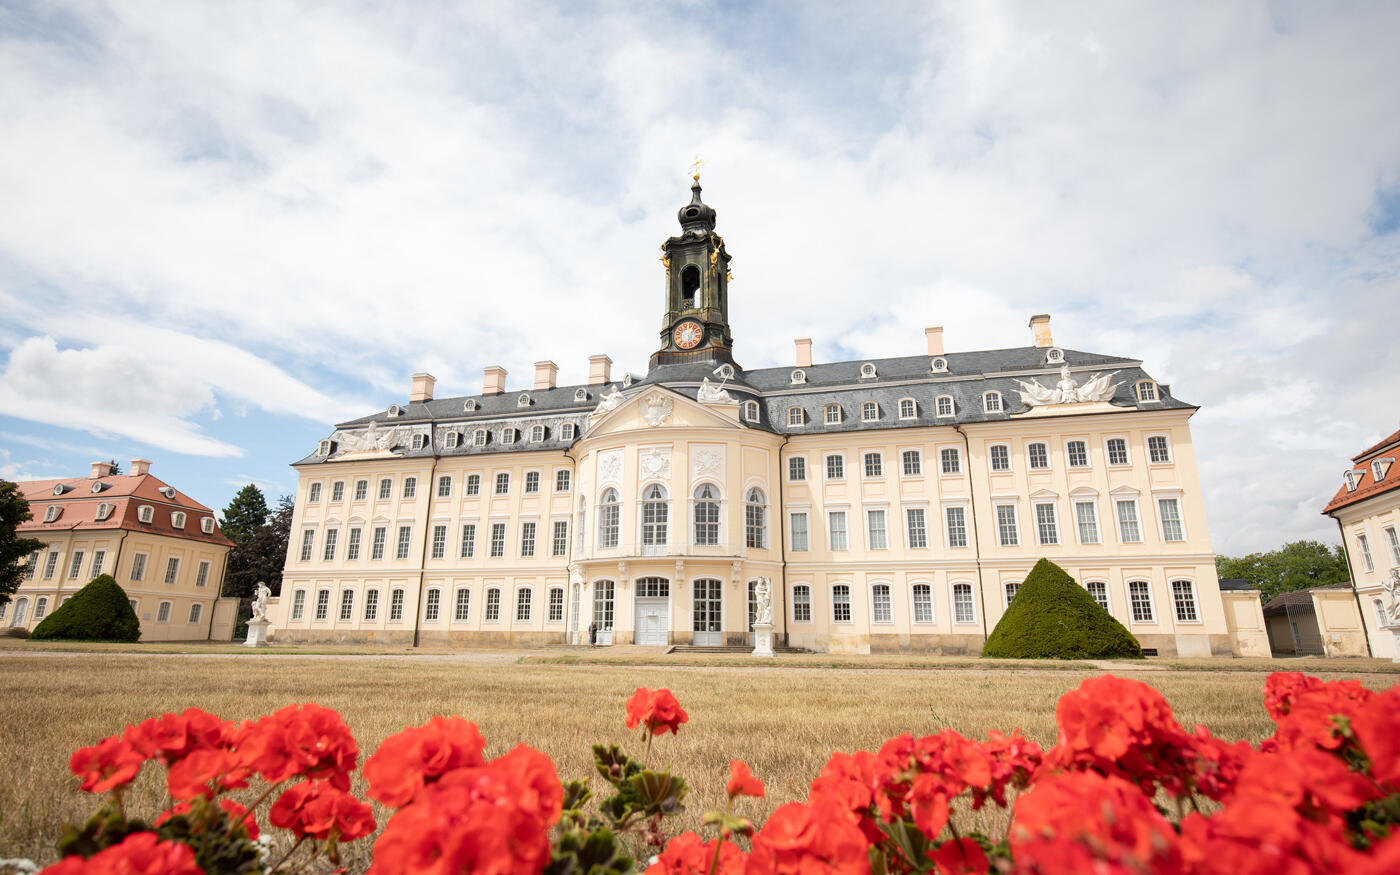 Burgen und Schlösser nahe Leipzig: Großes Schloss mit roten Blumen und Schlossgarten im Vordergrund